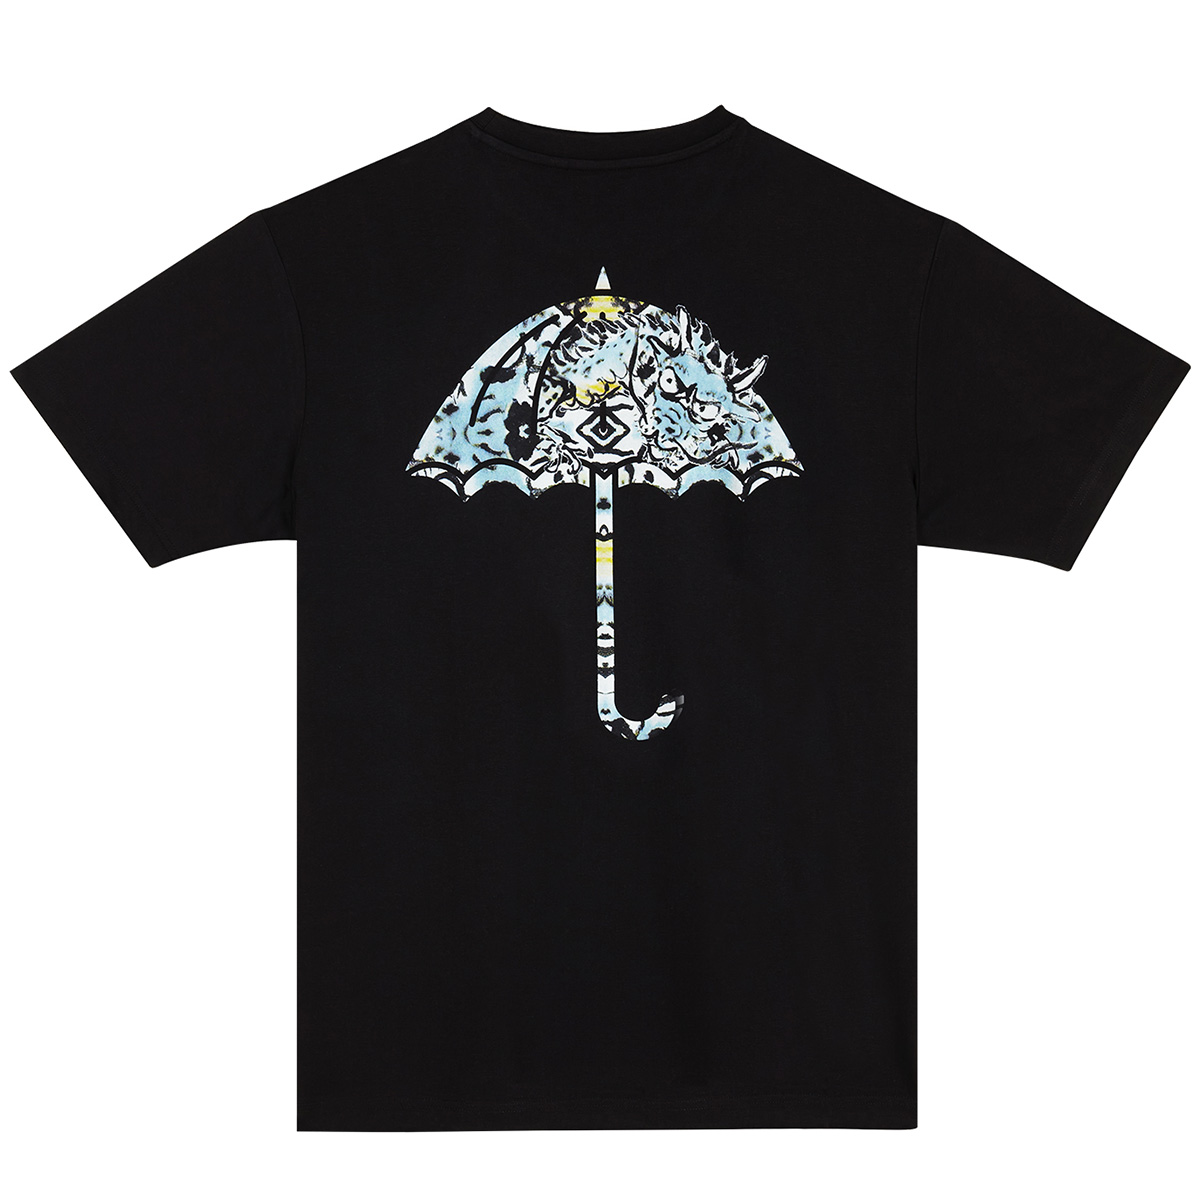 Helas Dragon T-Shirt Black